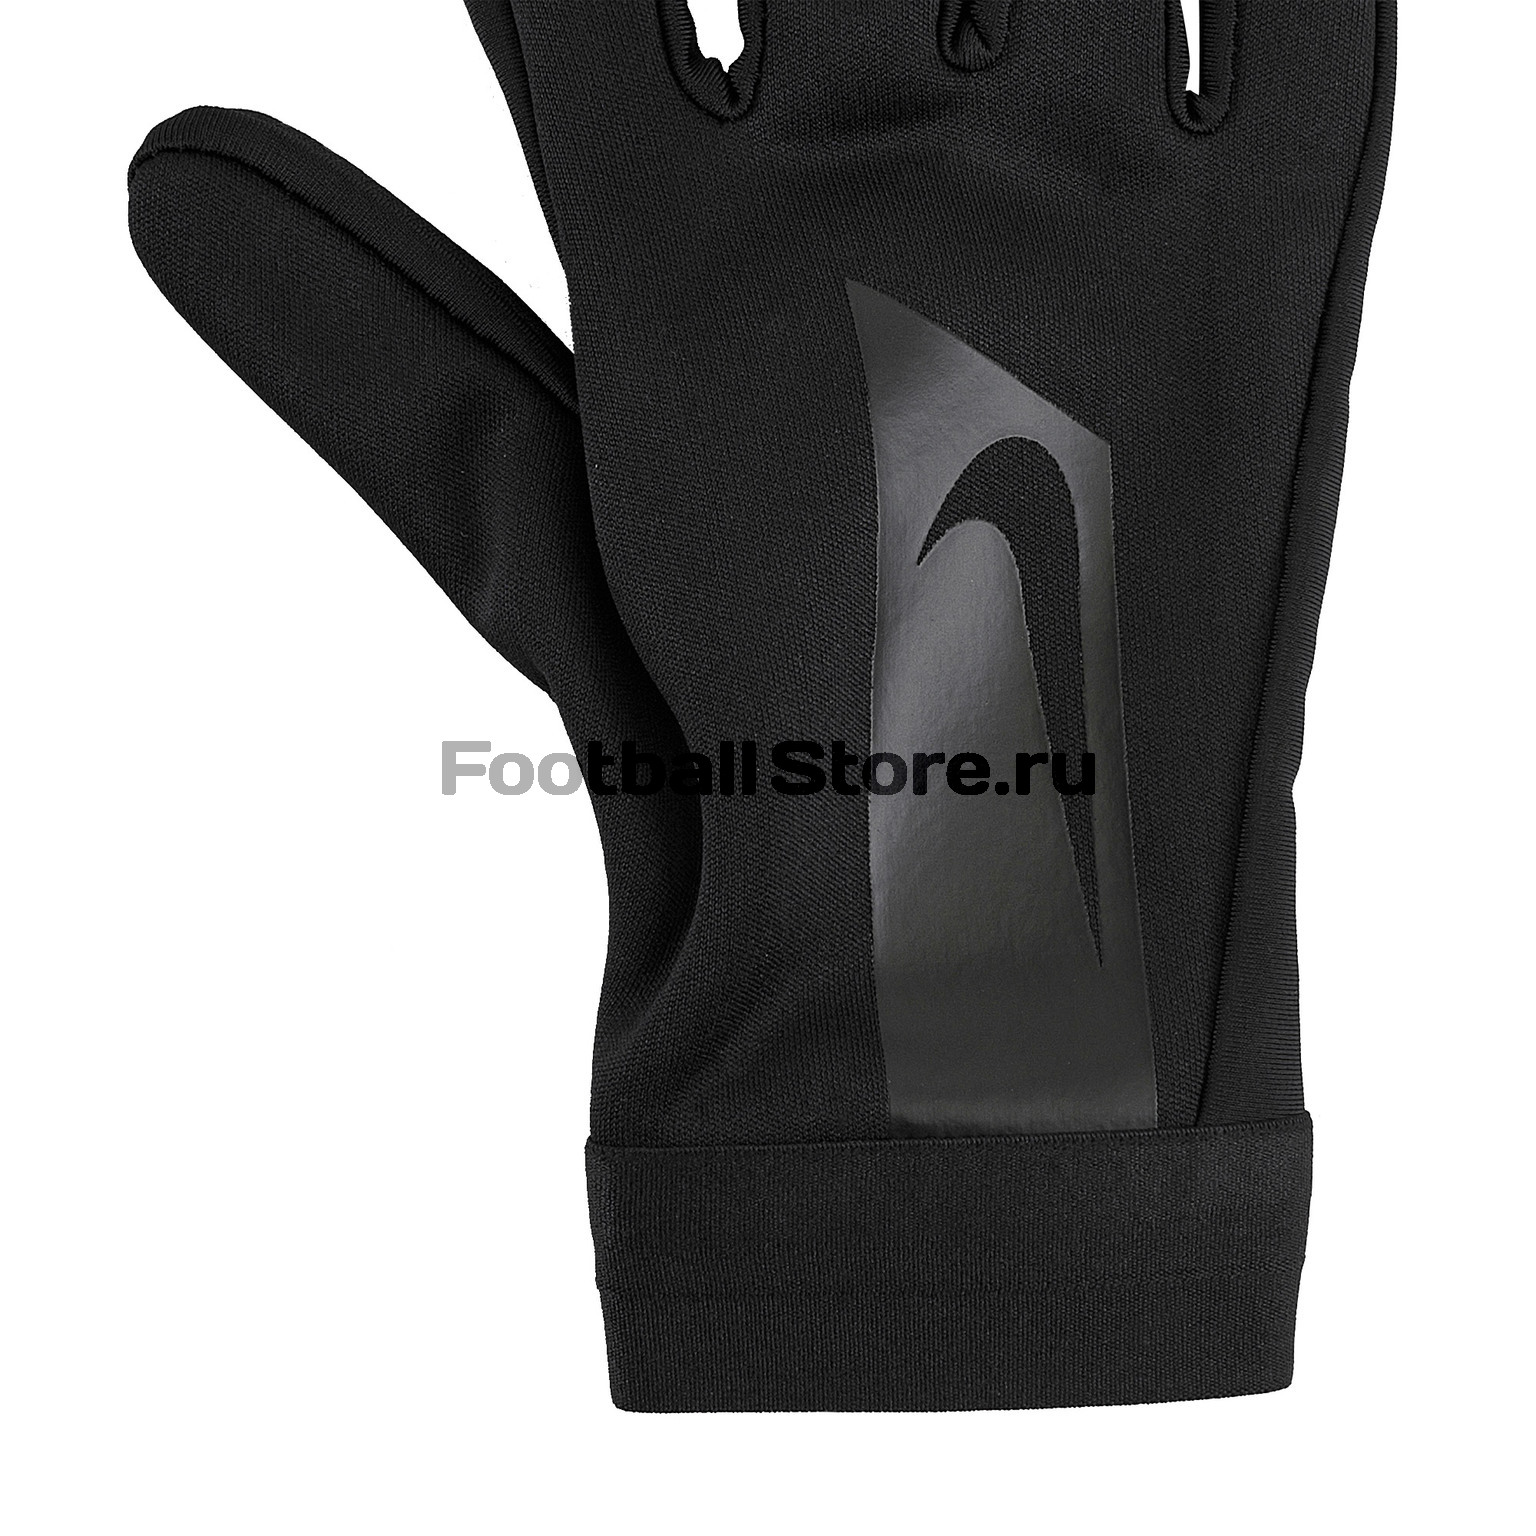 Перчатки тренировочные детские Nike Hyperwarm GS0378-011